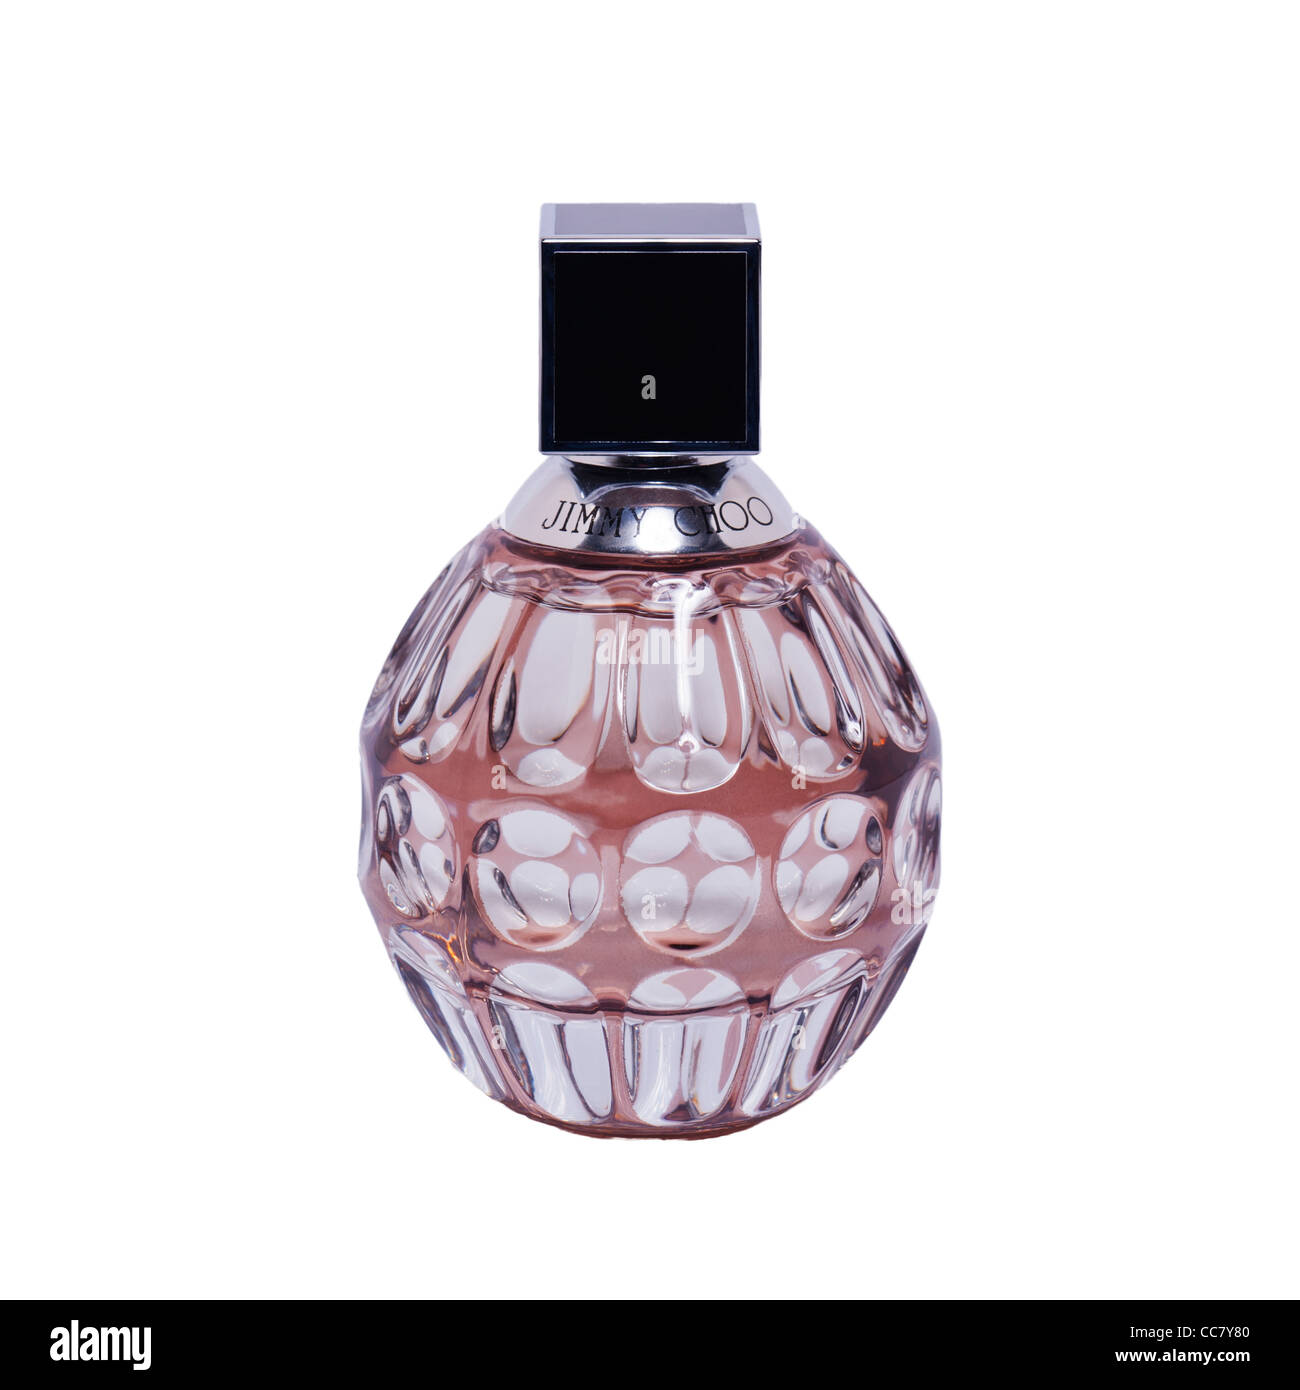 Un flacon de parfum de Jimmy Choo sur fond blanc Banque D'Images